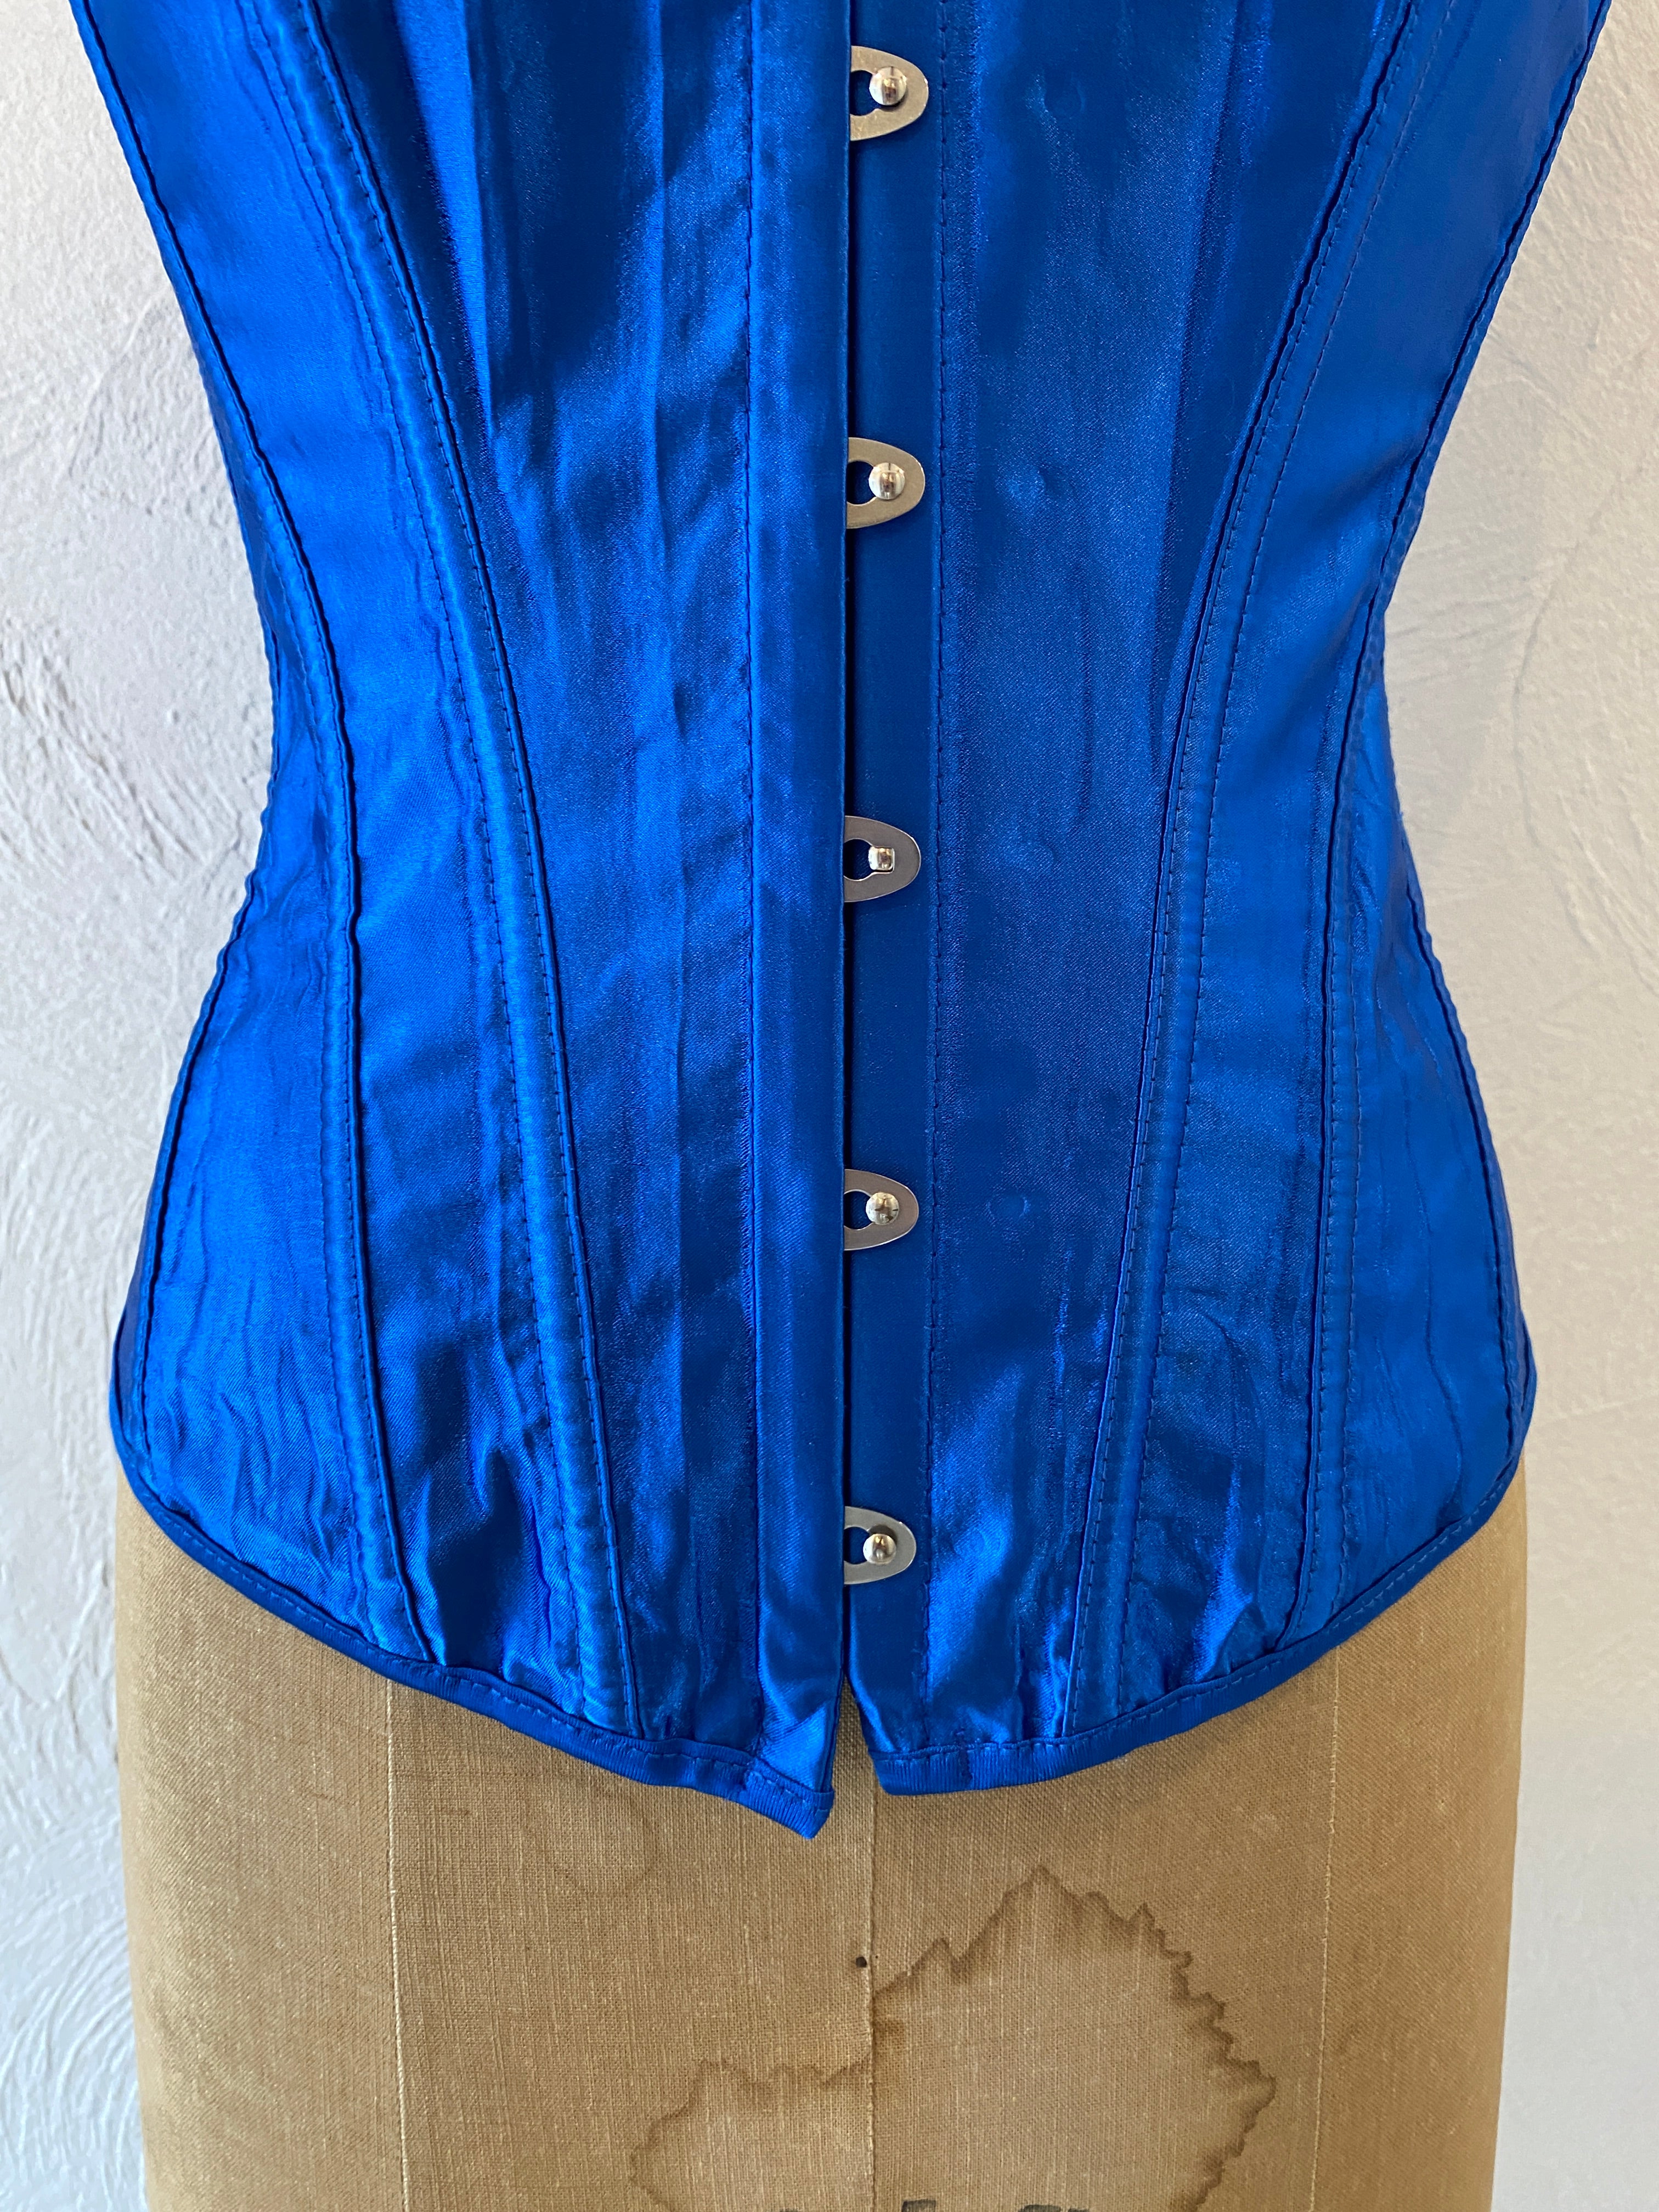 shiny blue corset